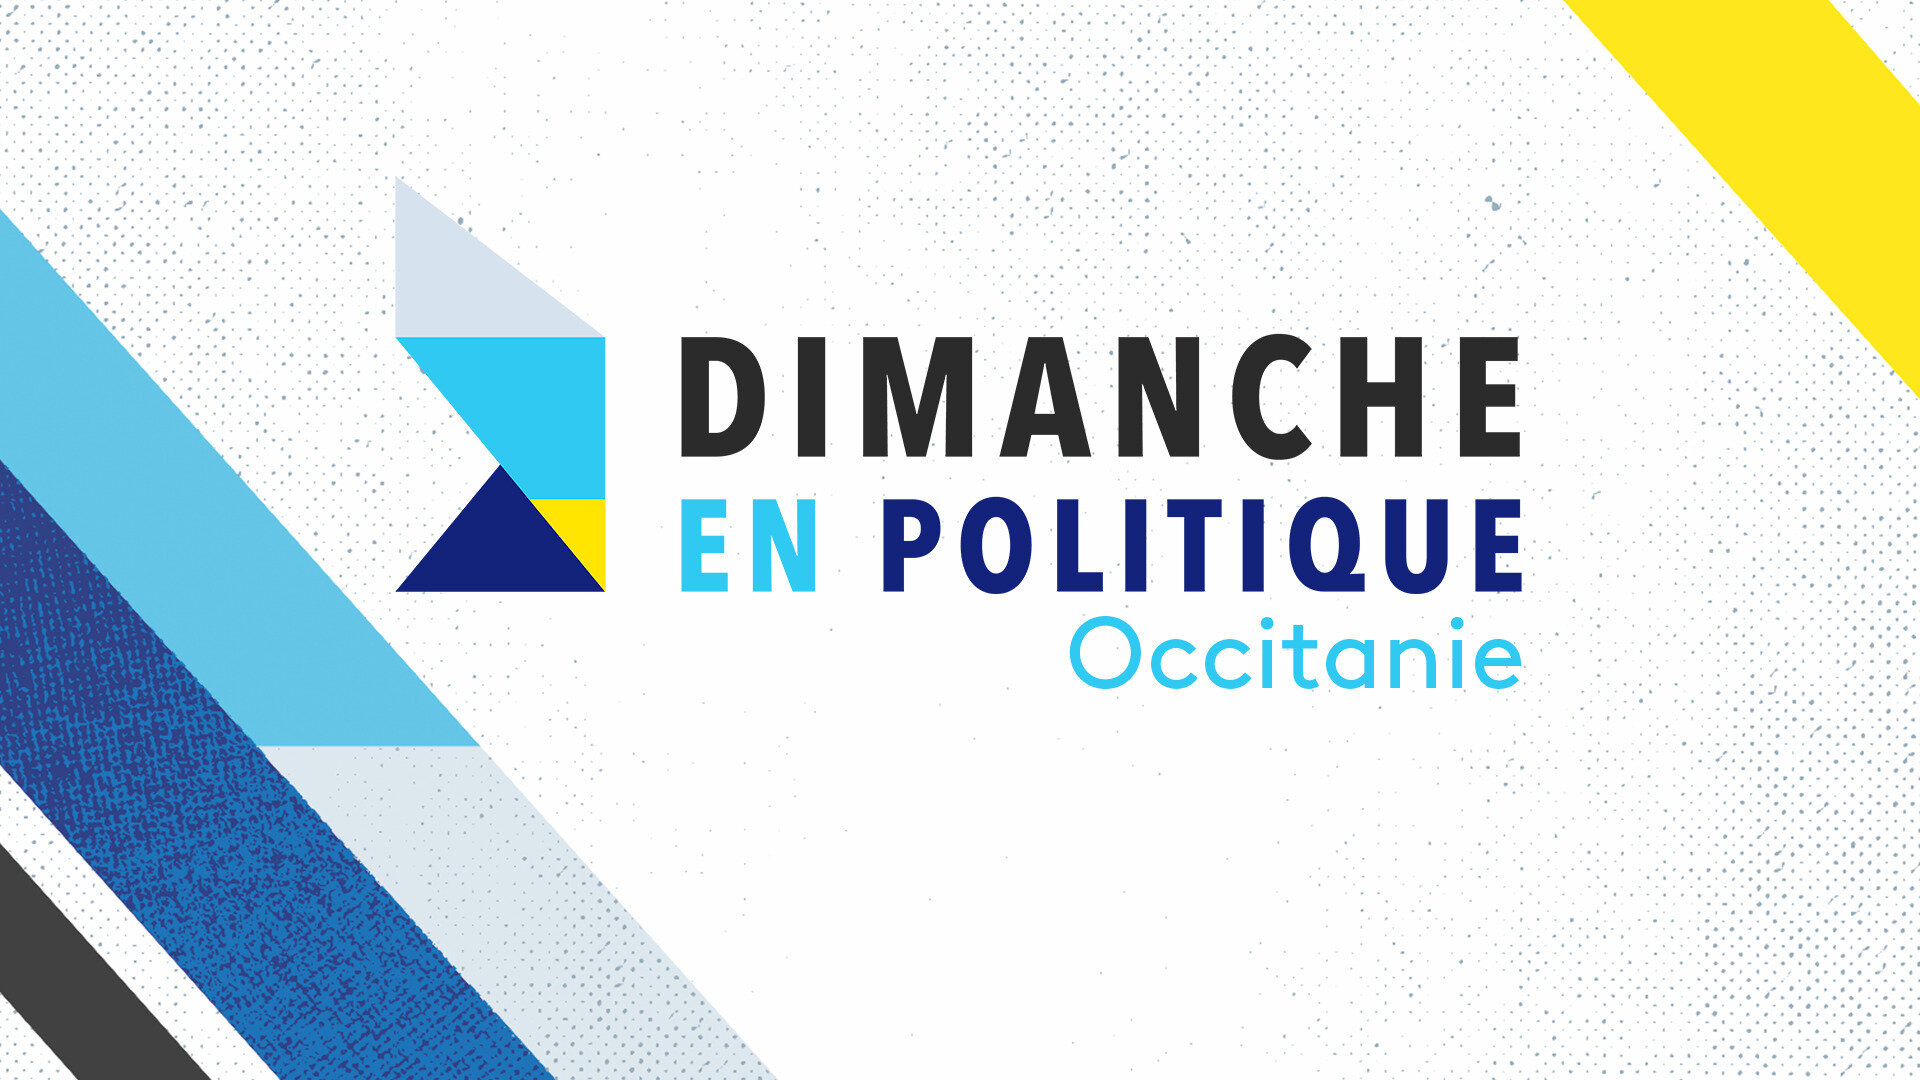 Dimanche en politique - Occitanie : Y a-t-il trop de résidences secondaires en Occitanie ?